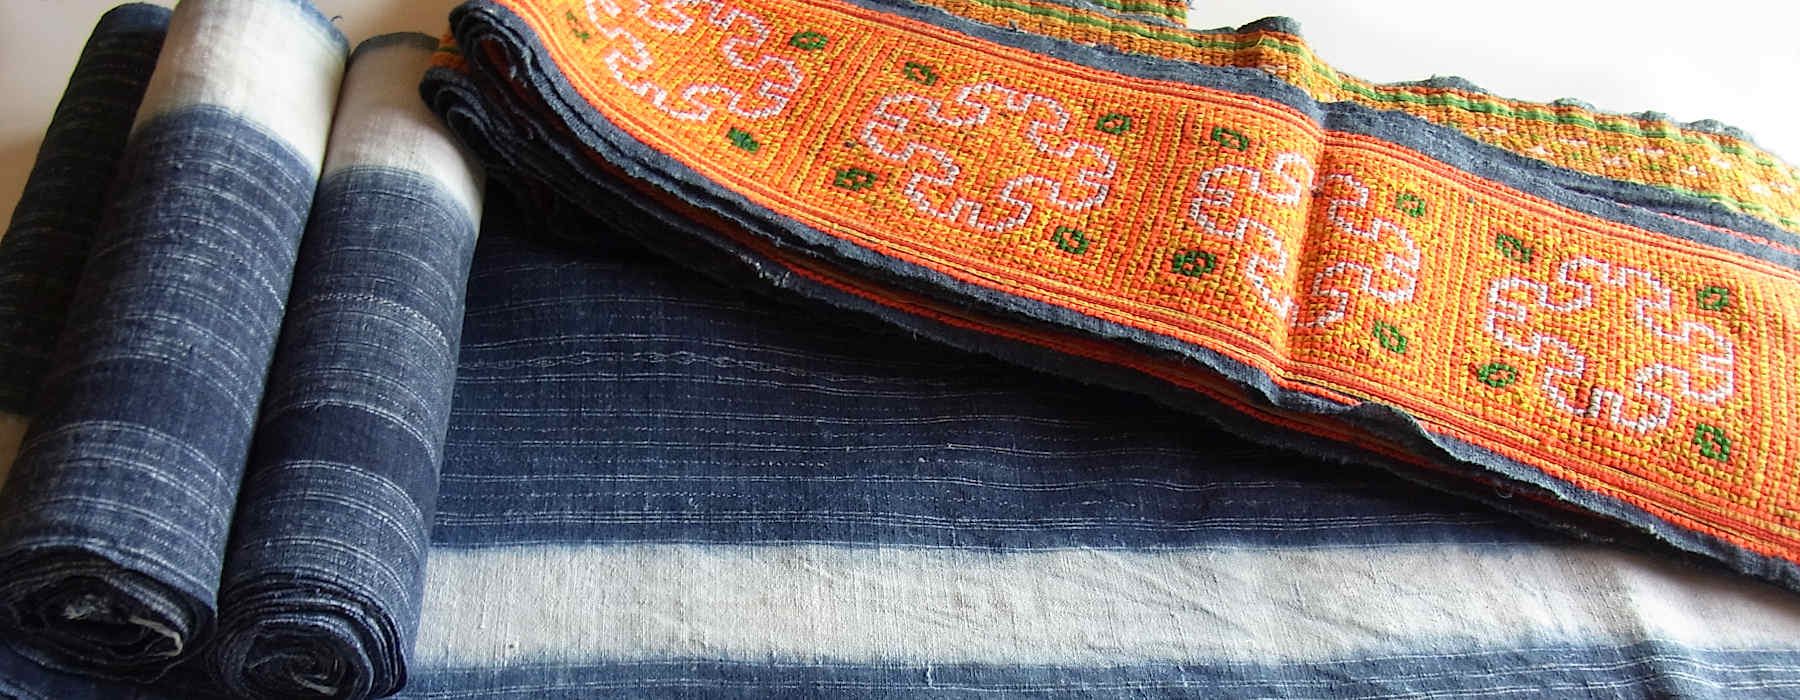 モン族の織物～ラオス・タイ・中国に暮らす山岳民族モンの手織り布です 